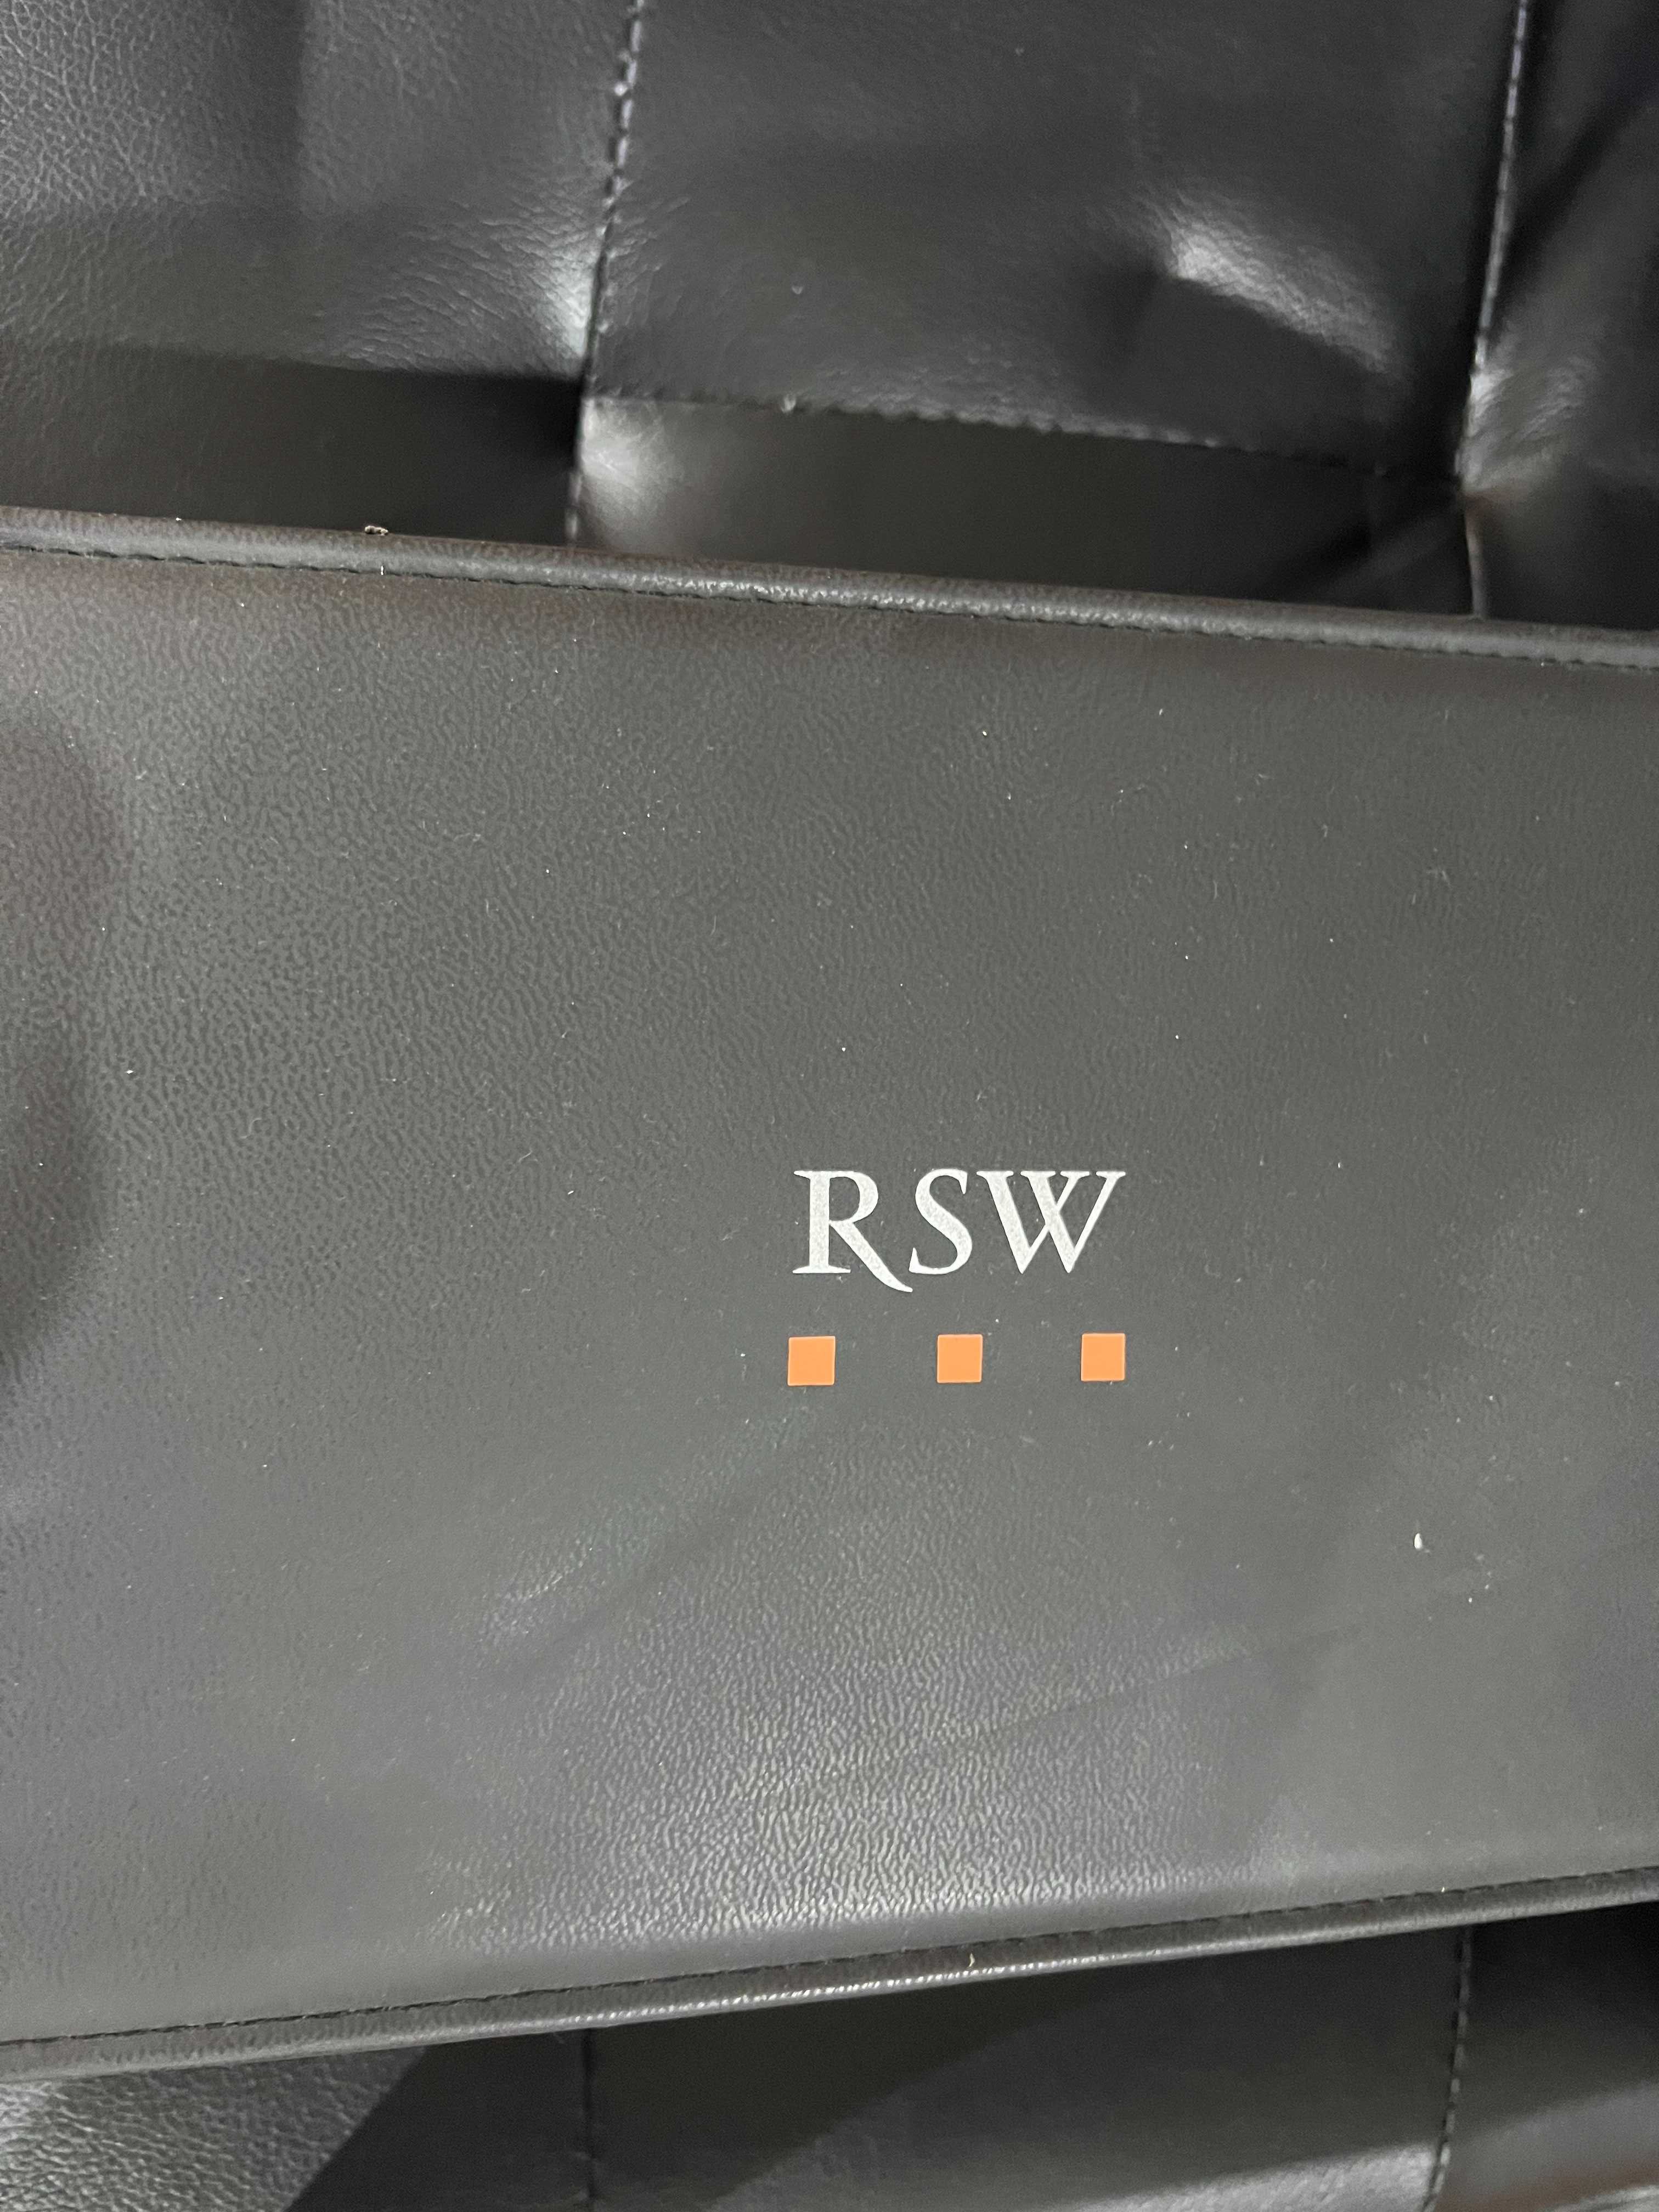 Ceas RSW - nou la cutie - Diamante - garantie.